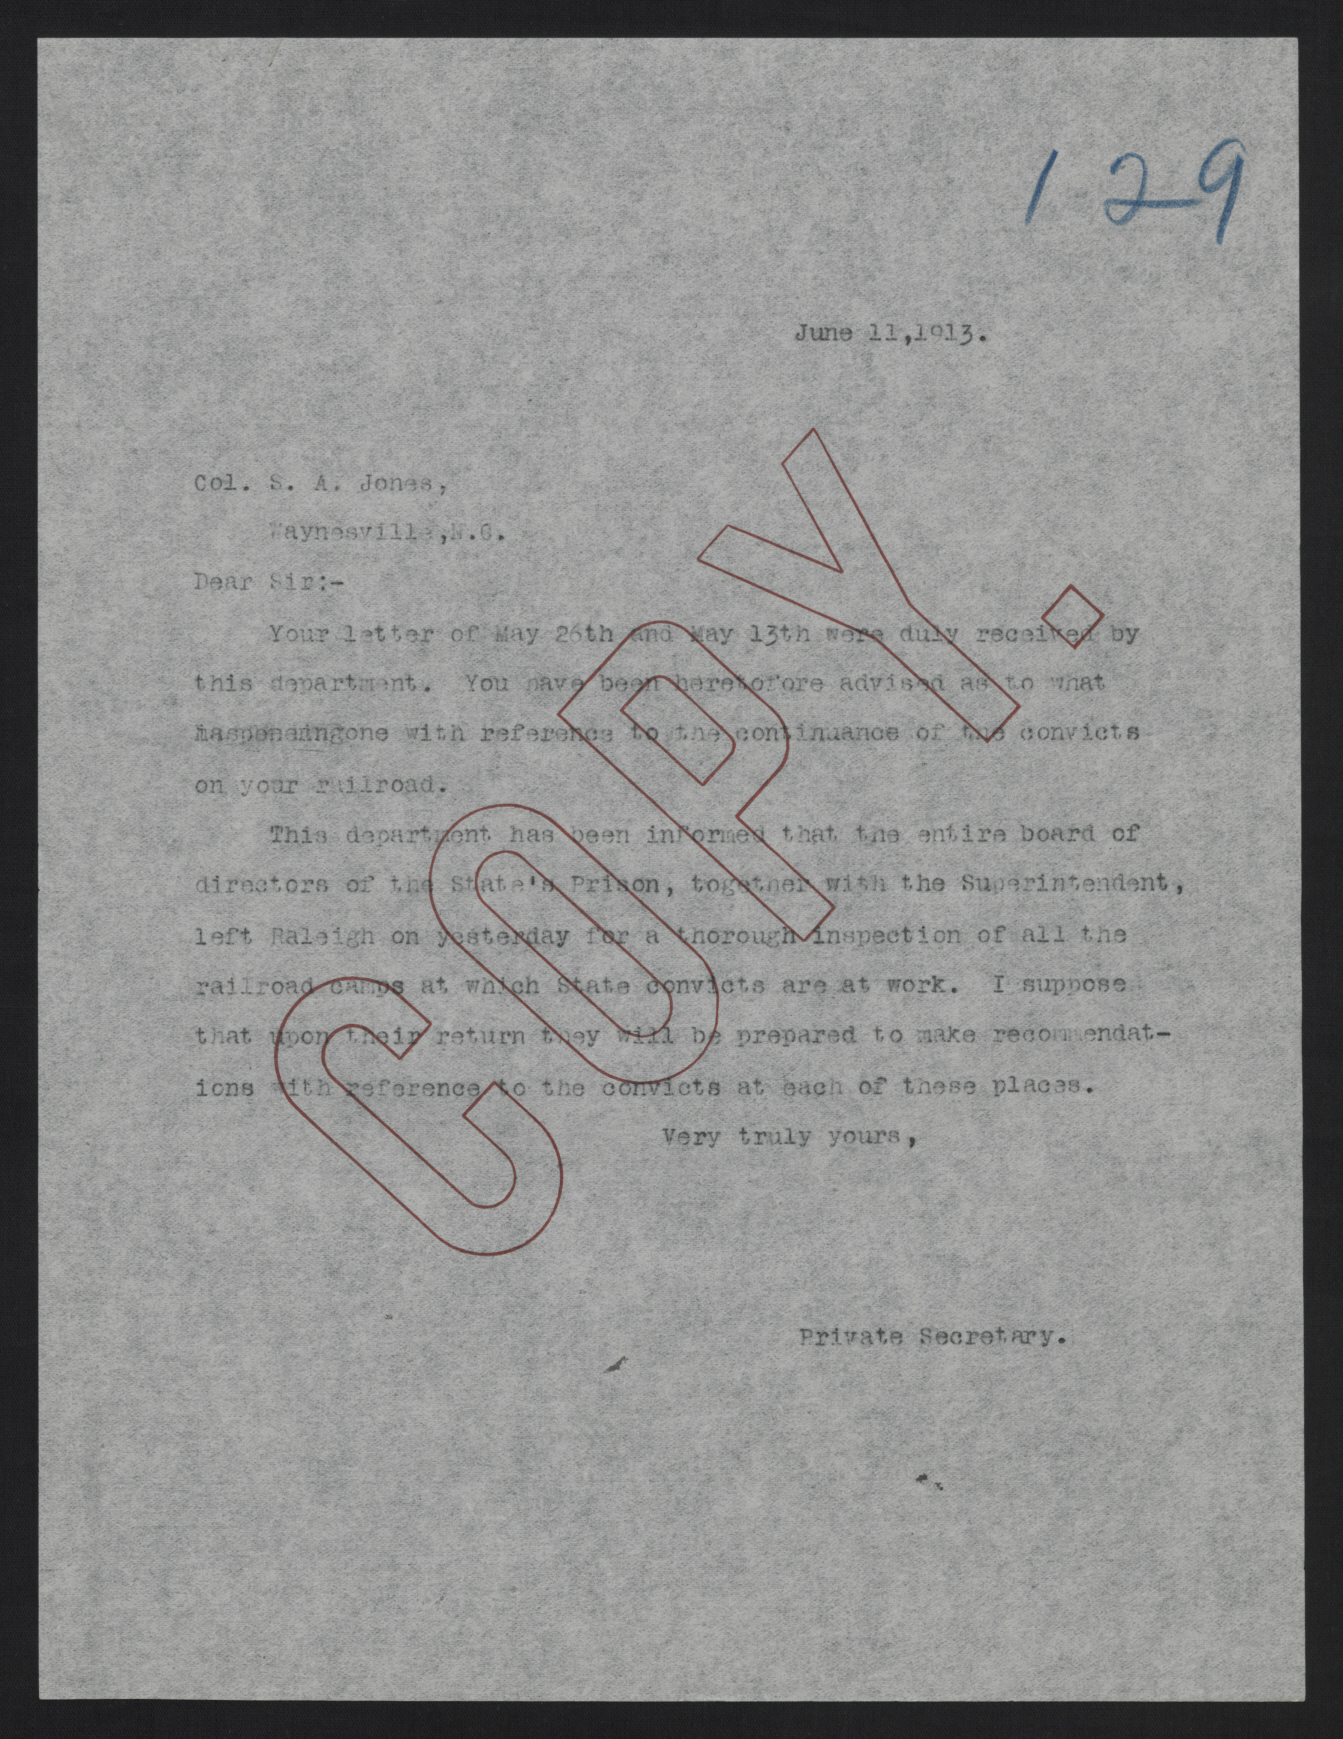 Letter from Kerr to Jones, June 11, 1913